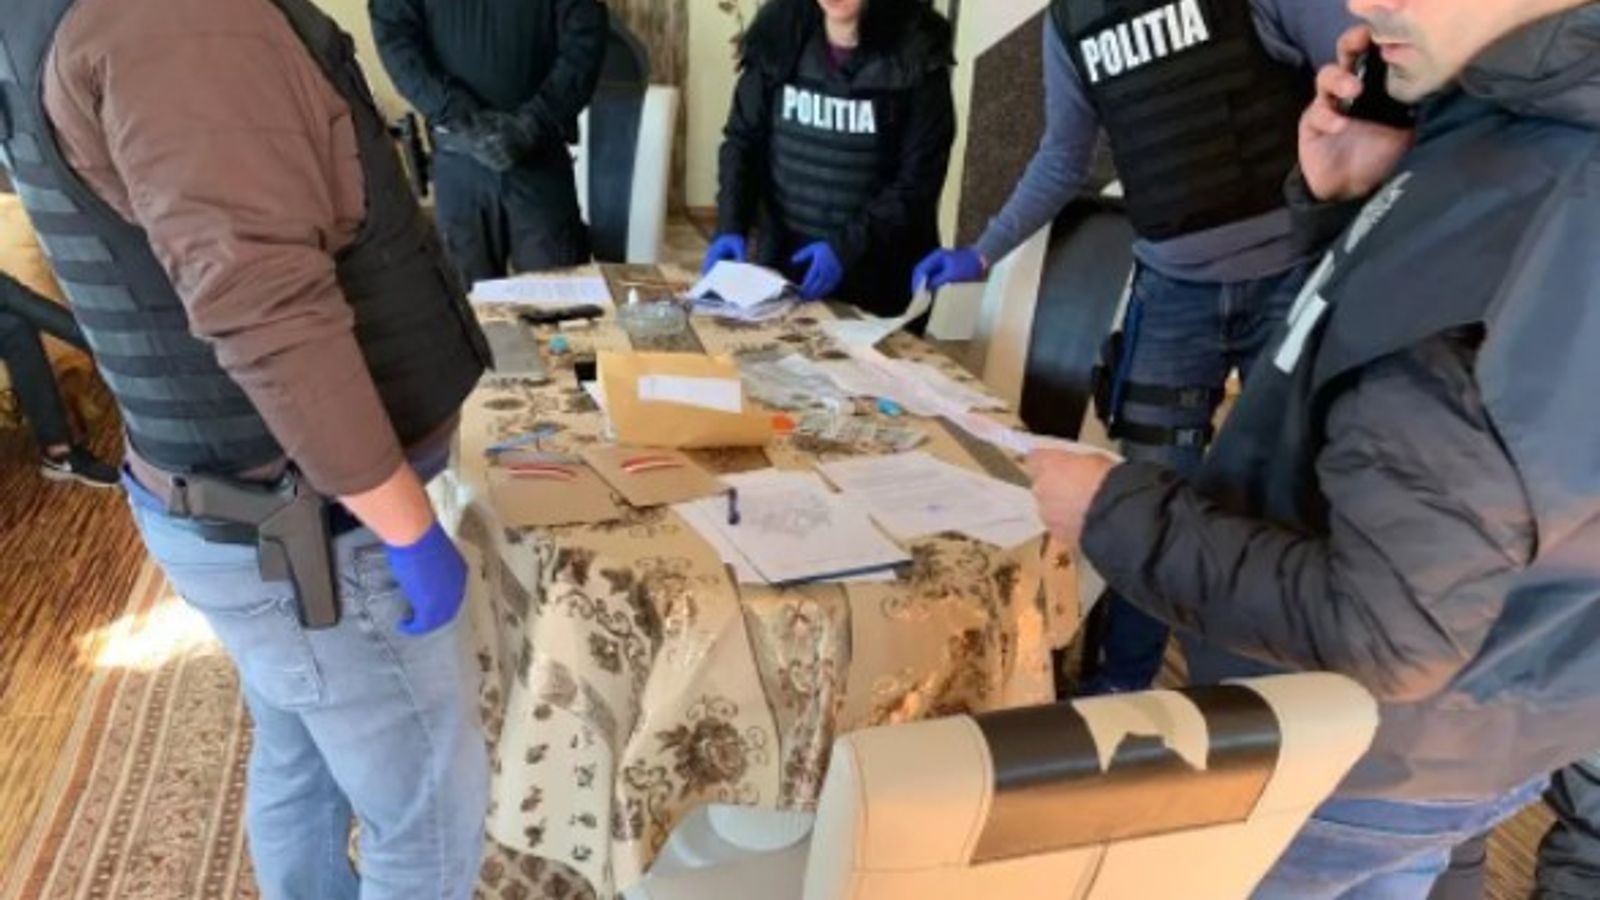 Italia: Polizia internazionale arresta rete criminale per frode a uomini soli per oltre 1 milione di euro |  Notizie dal mondo